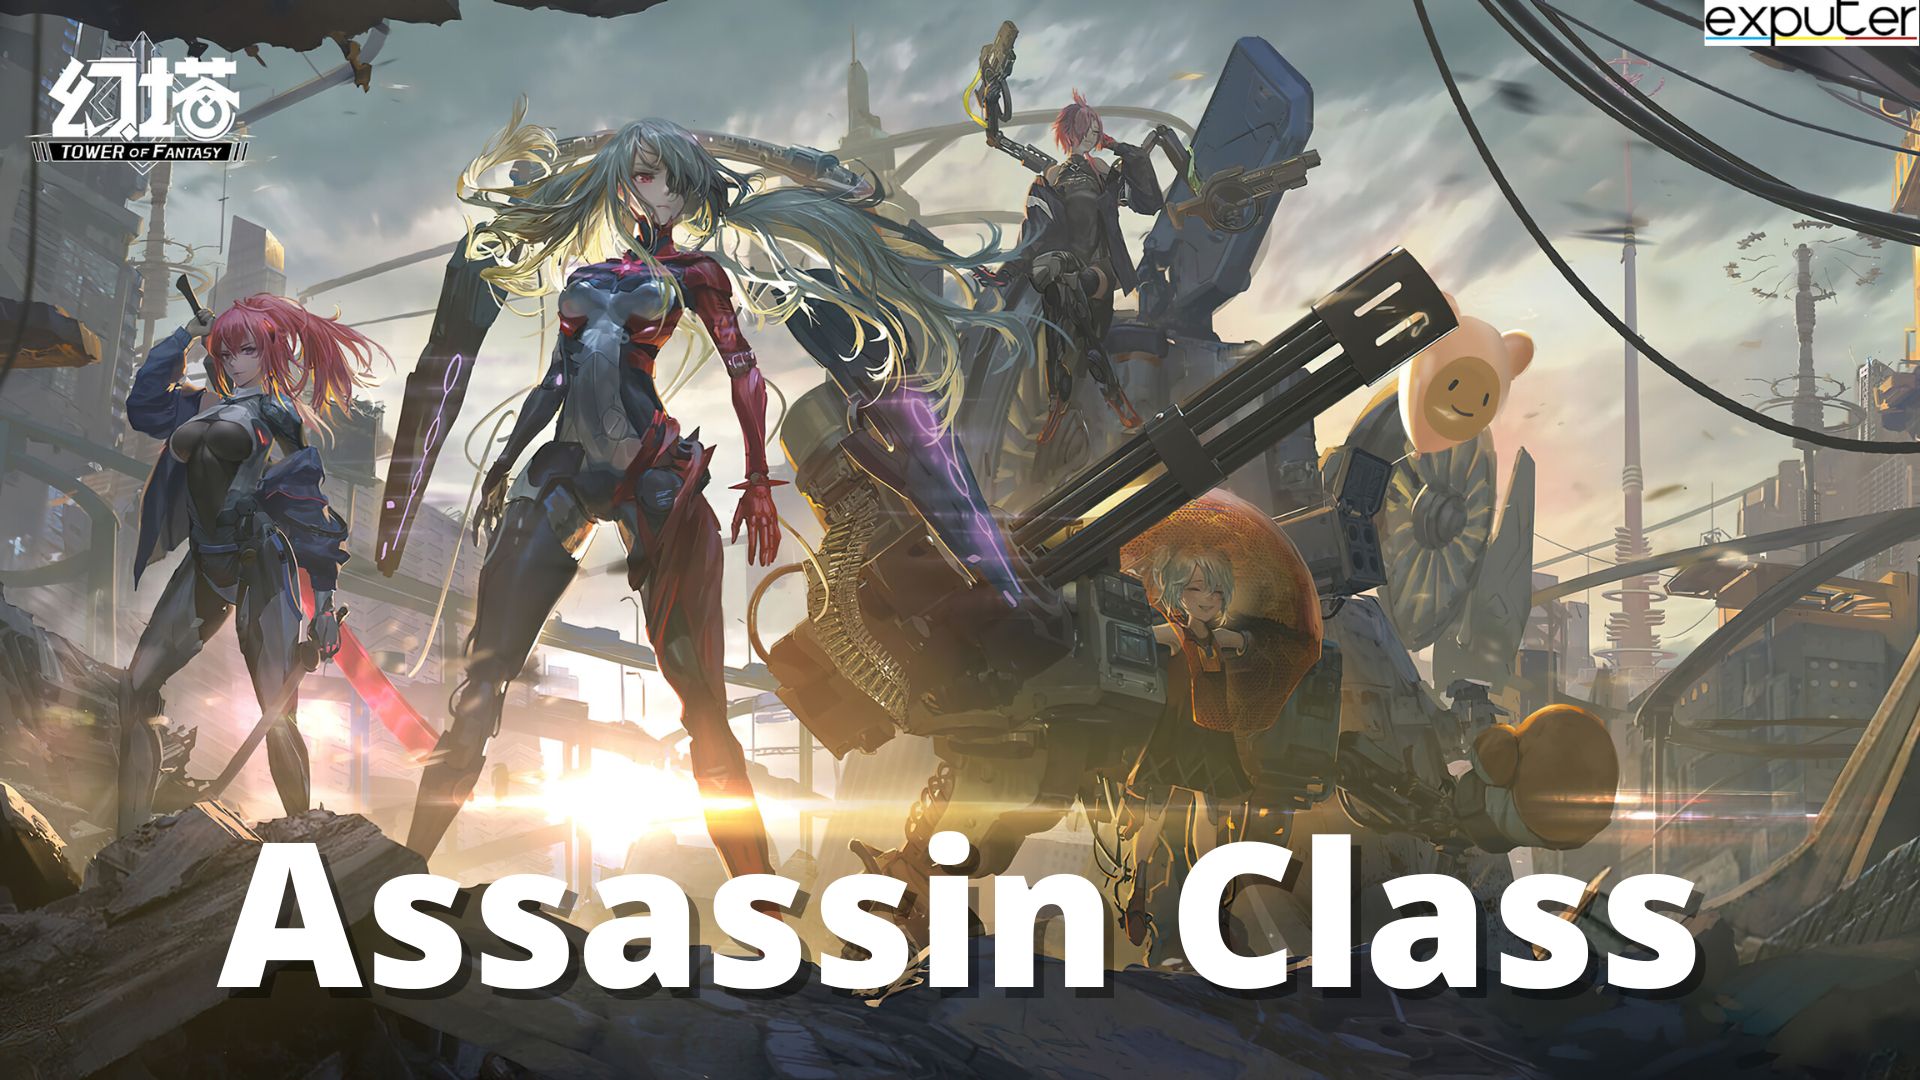 Assassin Class Tower of Fantasy Classi migliori